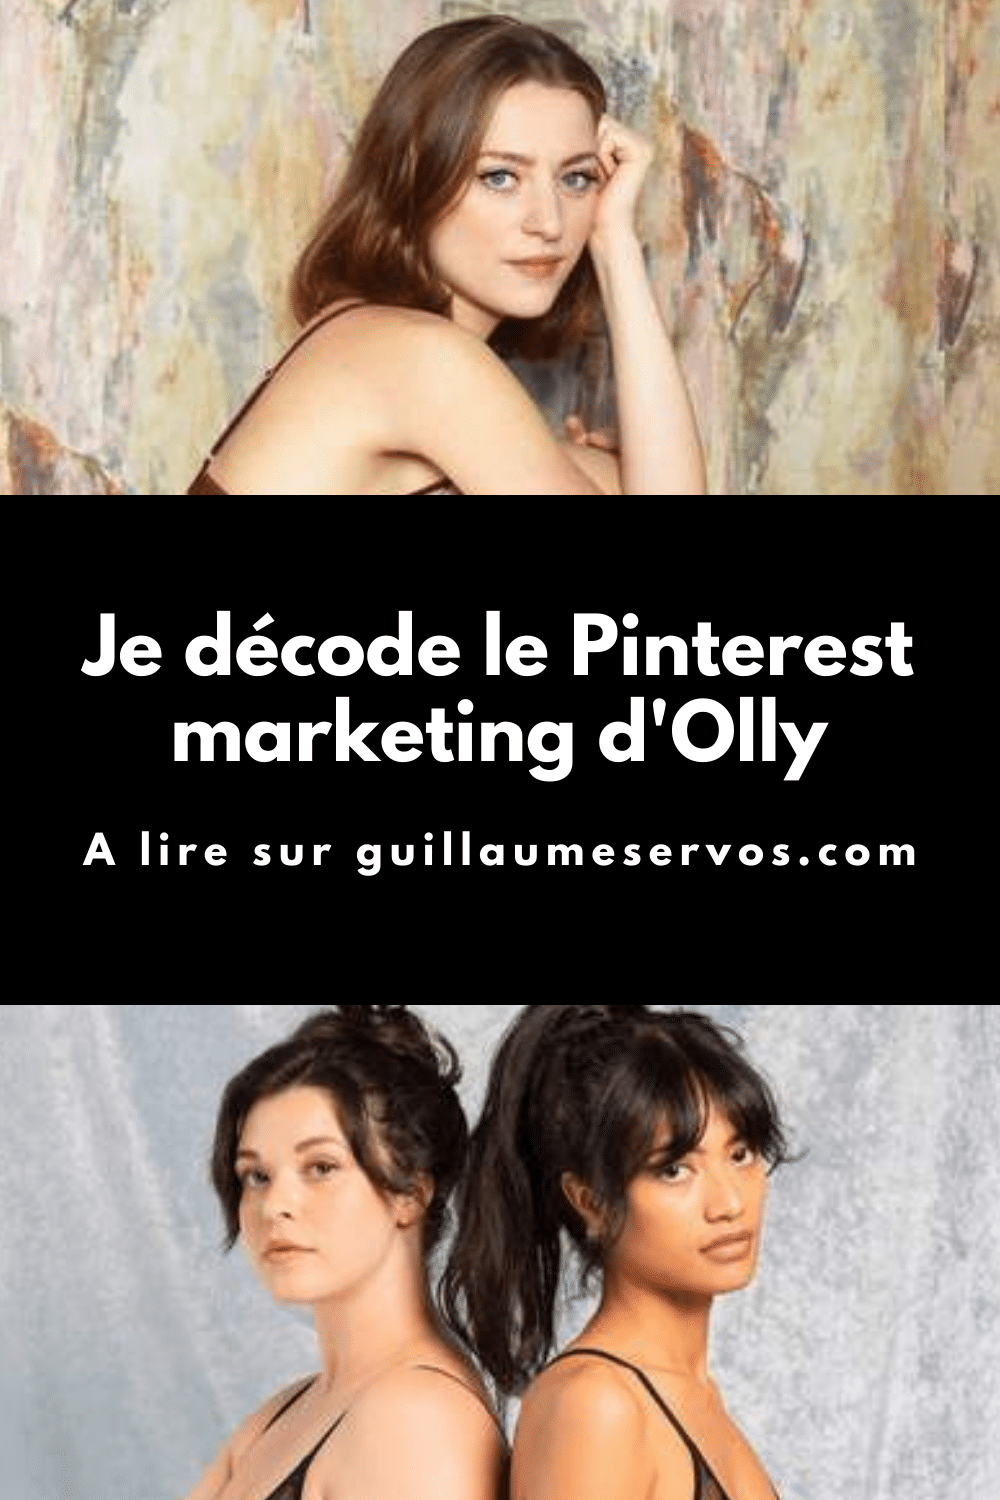 Comment Olly utilise Pinterest pour son business ? Je décode le Pinterest marketing de la marque de lingerie française éco-responsable et durable.